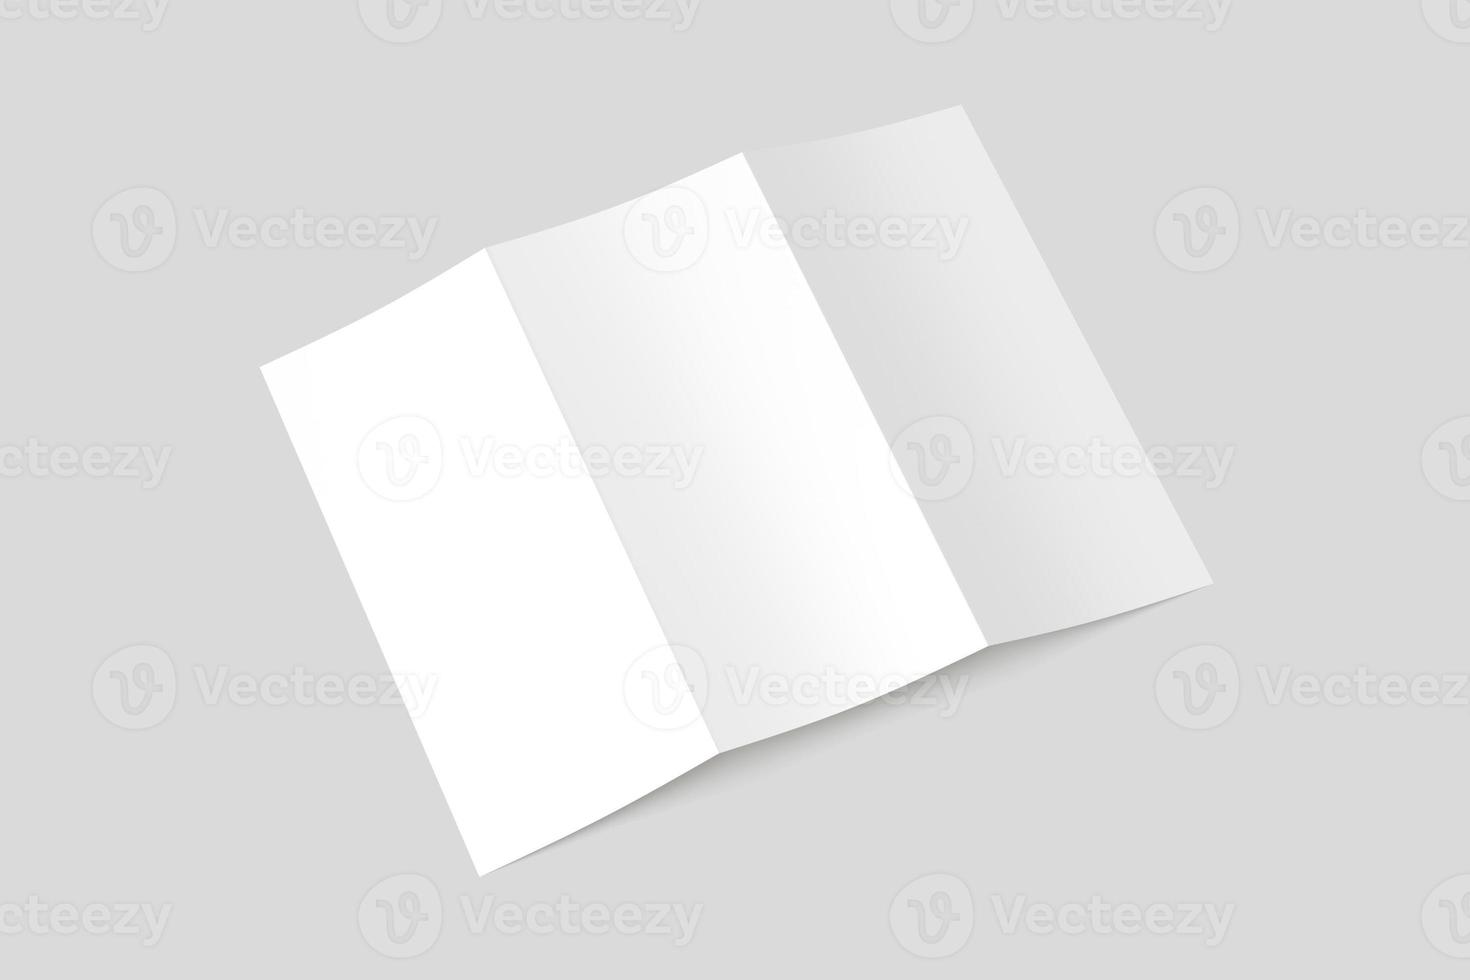 maquetas en blanco de folleto tríptico a4 foto